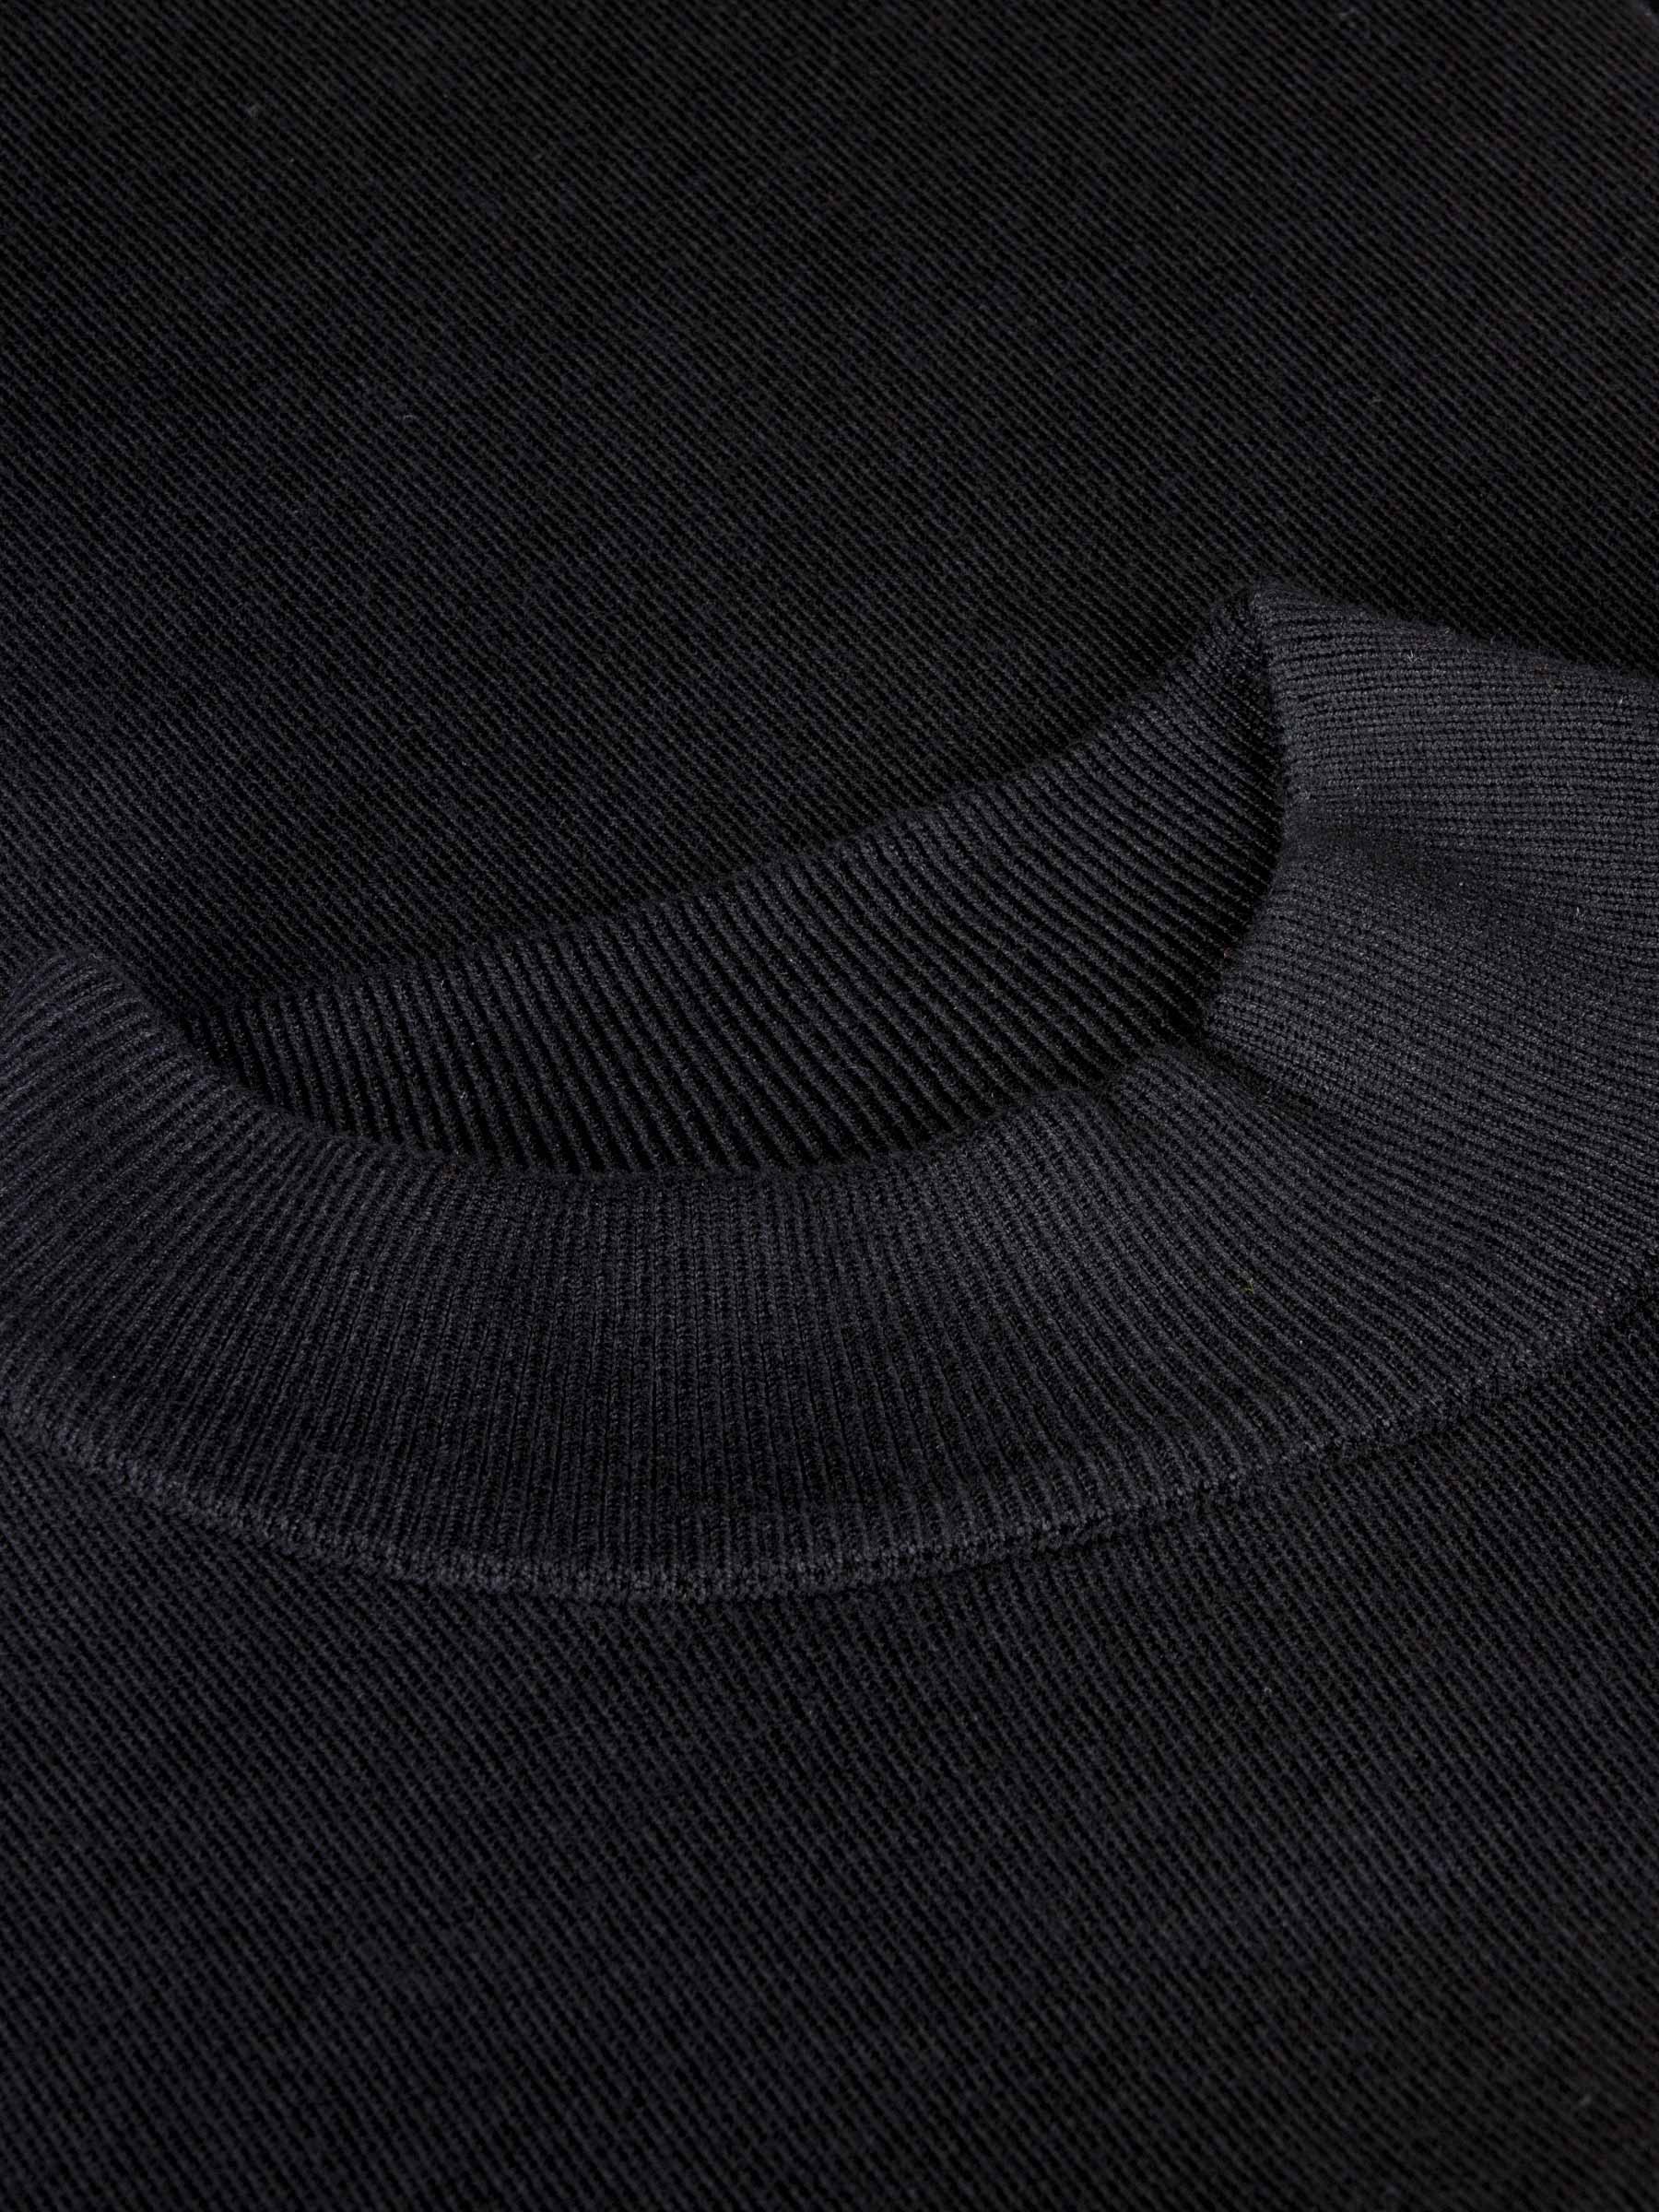 Siena Round-Necked Black Sweater